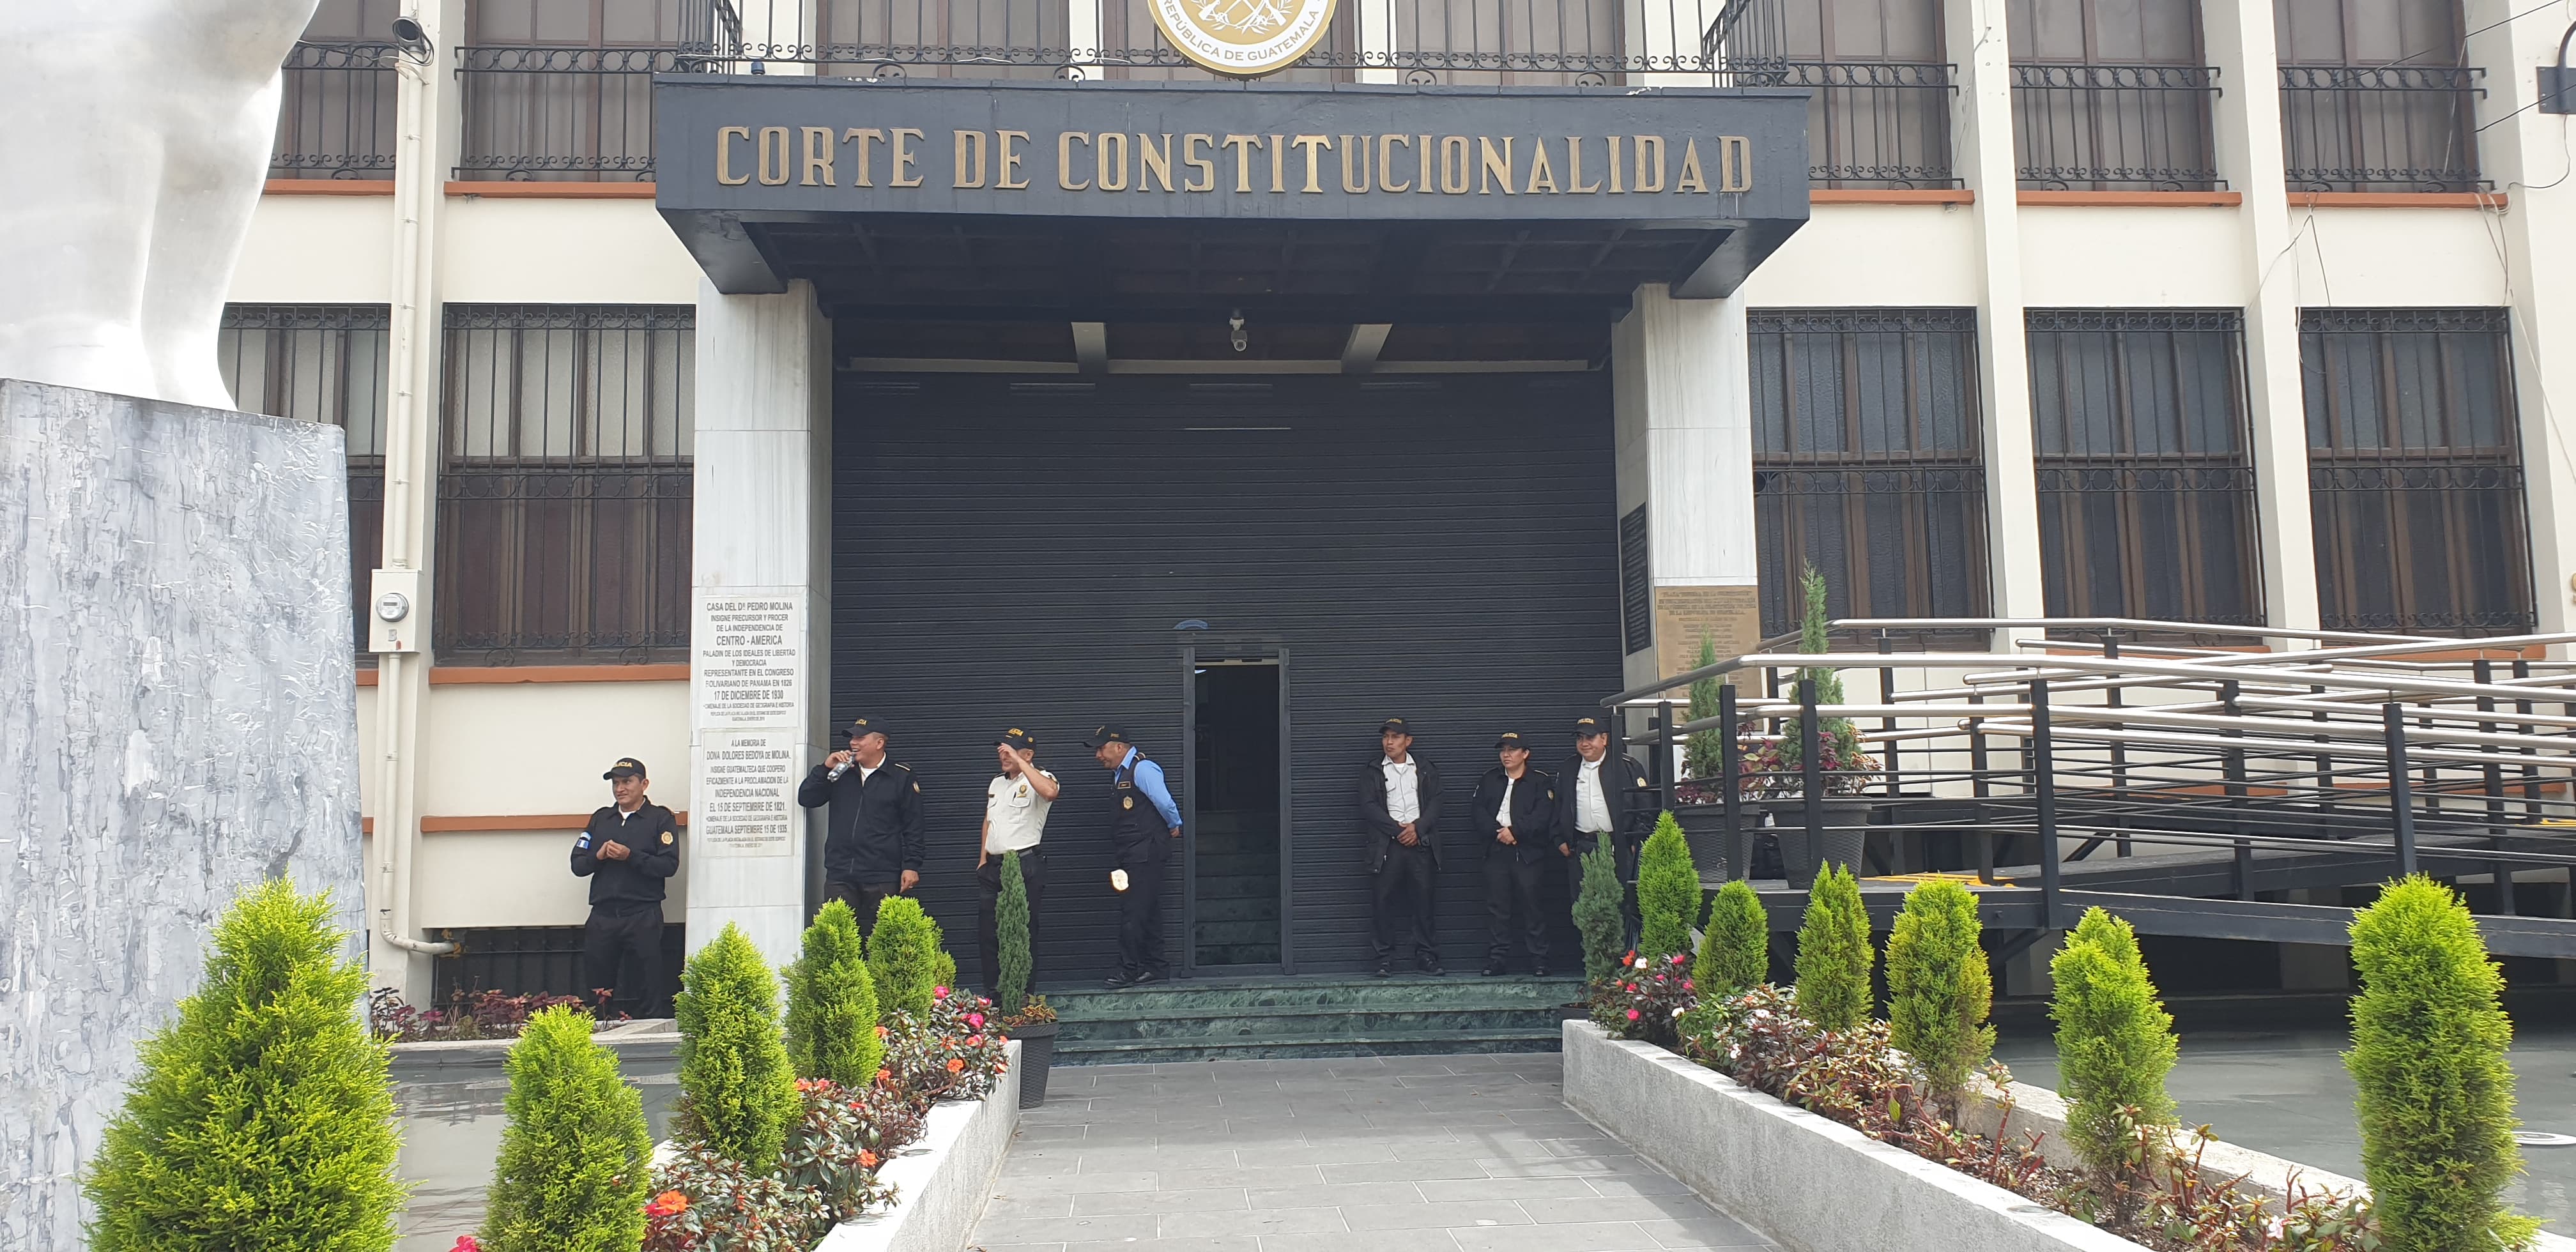 Sede de la Corte de Constitucionalidad en la Ciudad de Guatemala. (Foto Prensa Libre: Byron Baiza)